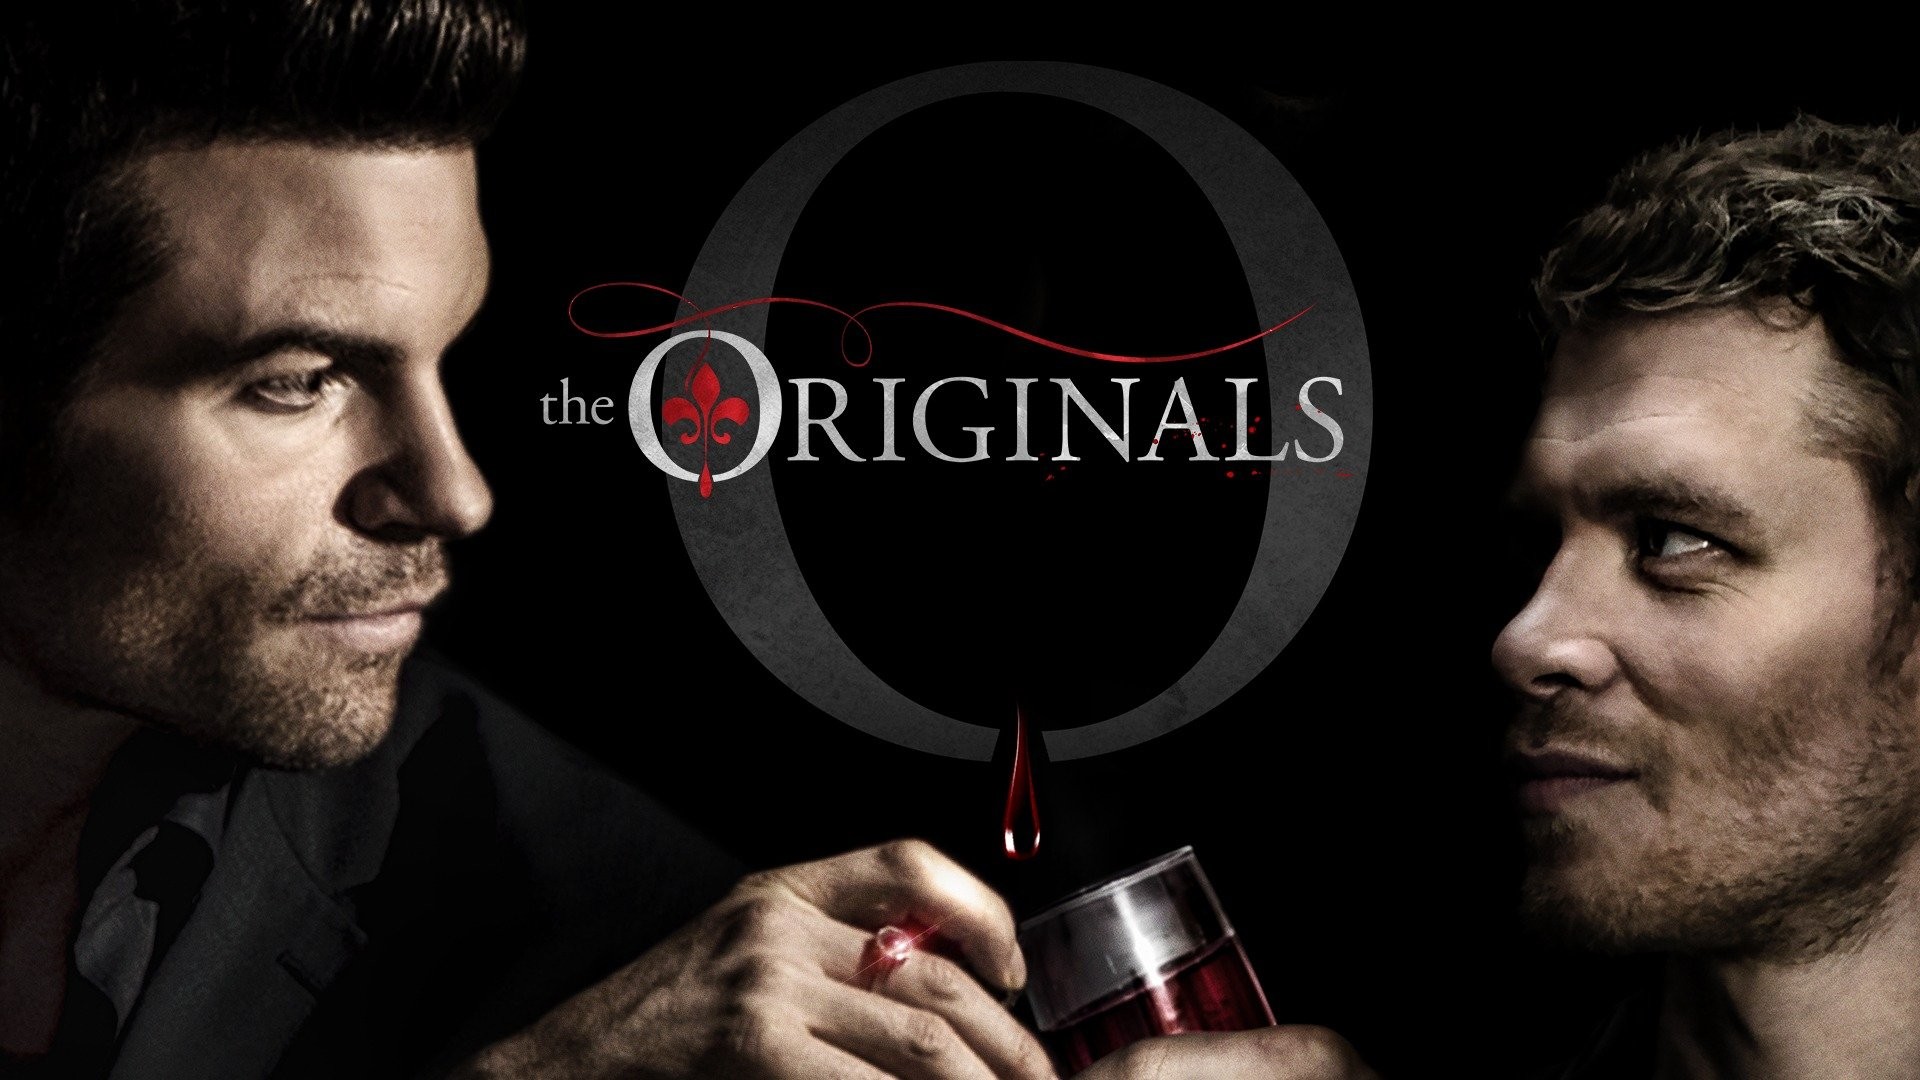 The Originals TV show on CW